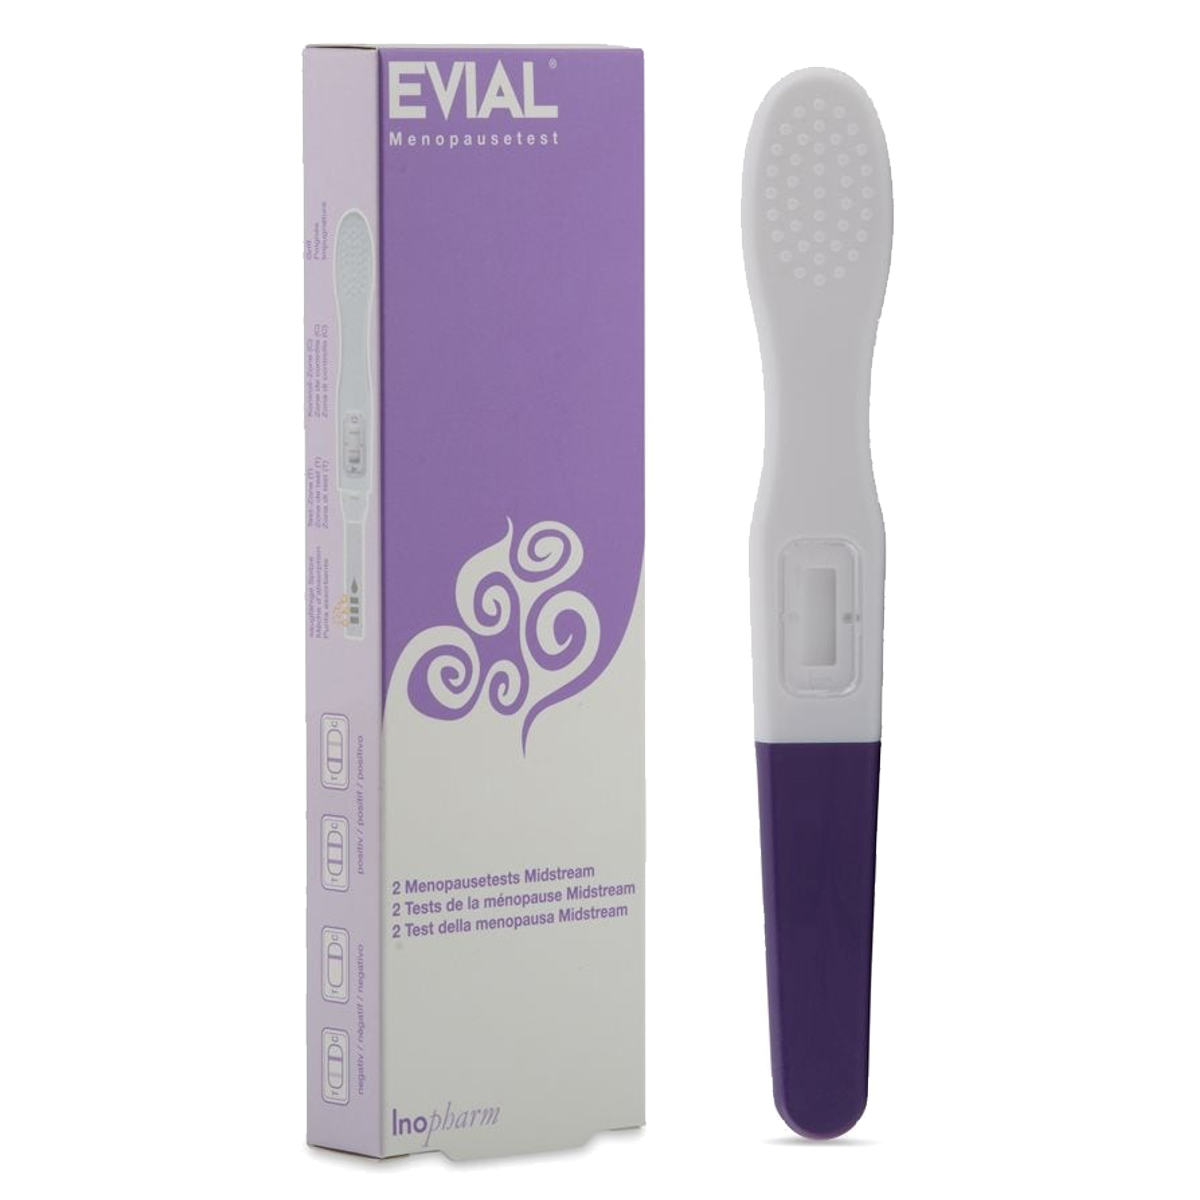 Evial Menopausetest Midstream 2 Stück